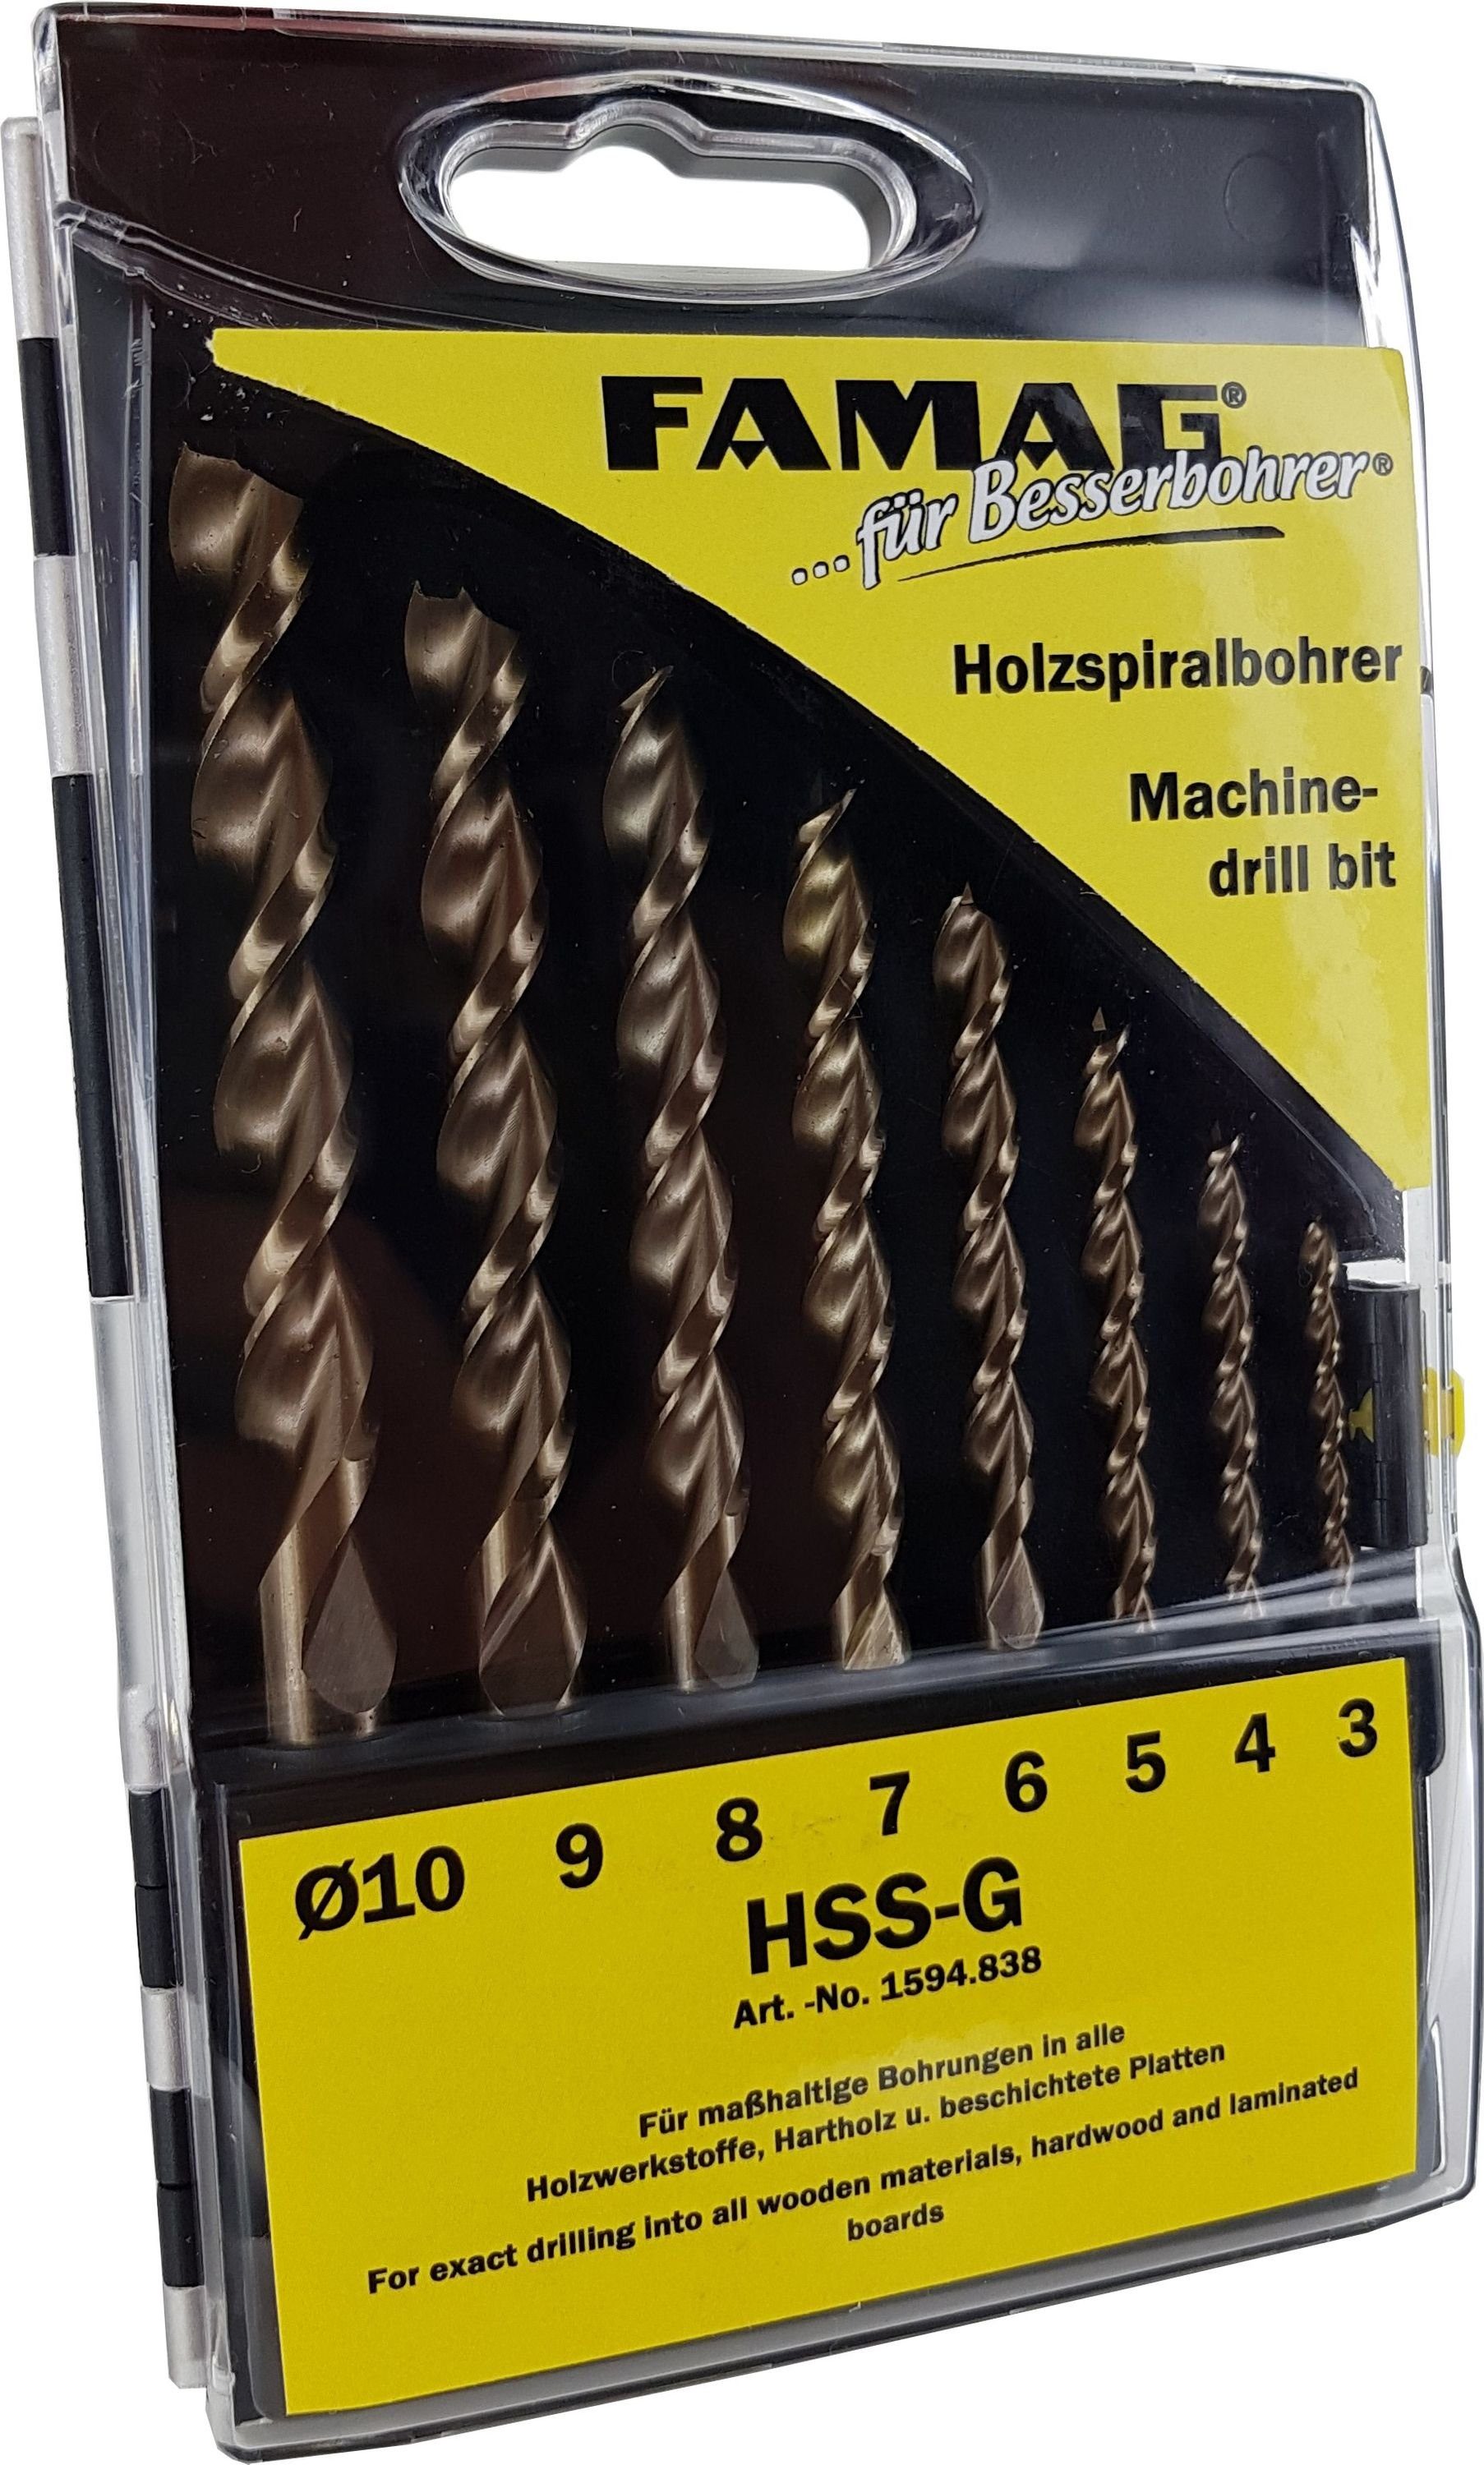 HSS-GHolzspiralbohrer für 5-teilig Holzwerkstoffe Famag 4-10, (Größe HSS-G, FAMAG Set Holzbohrer Ø